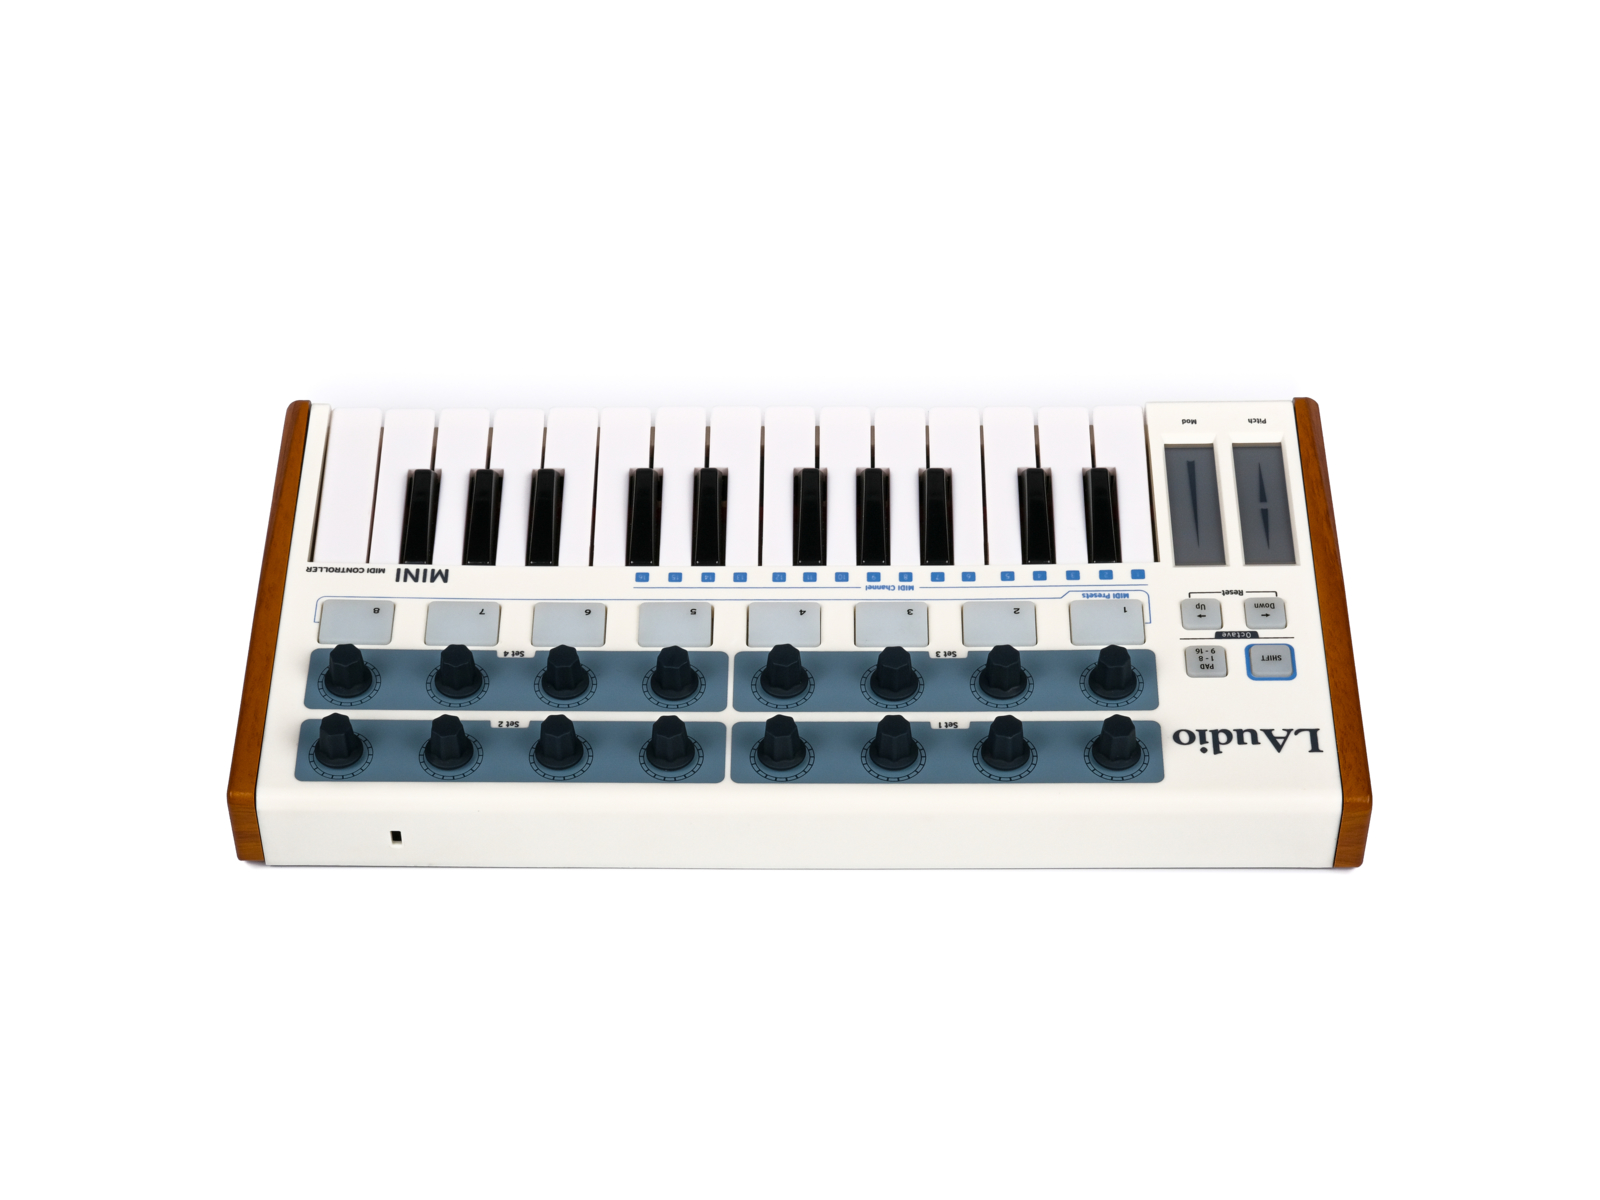 LAudio Worldemini MIDI-контроллер, 25 клавиш купить в prostore.me